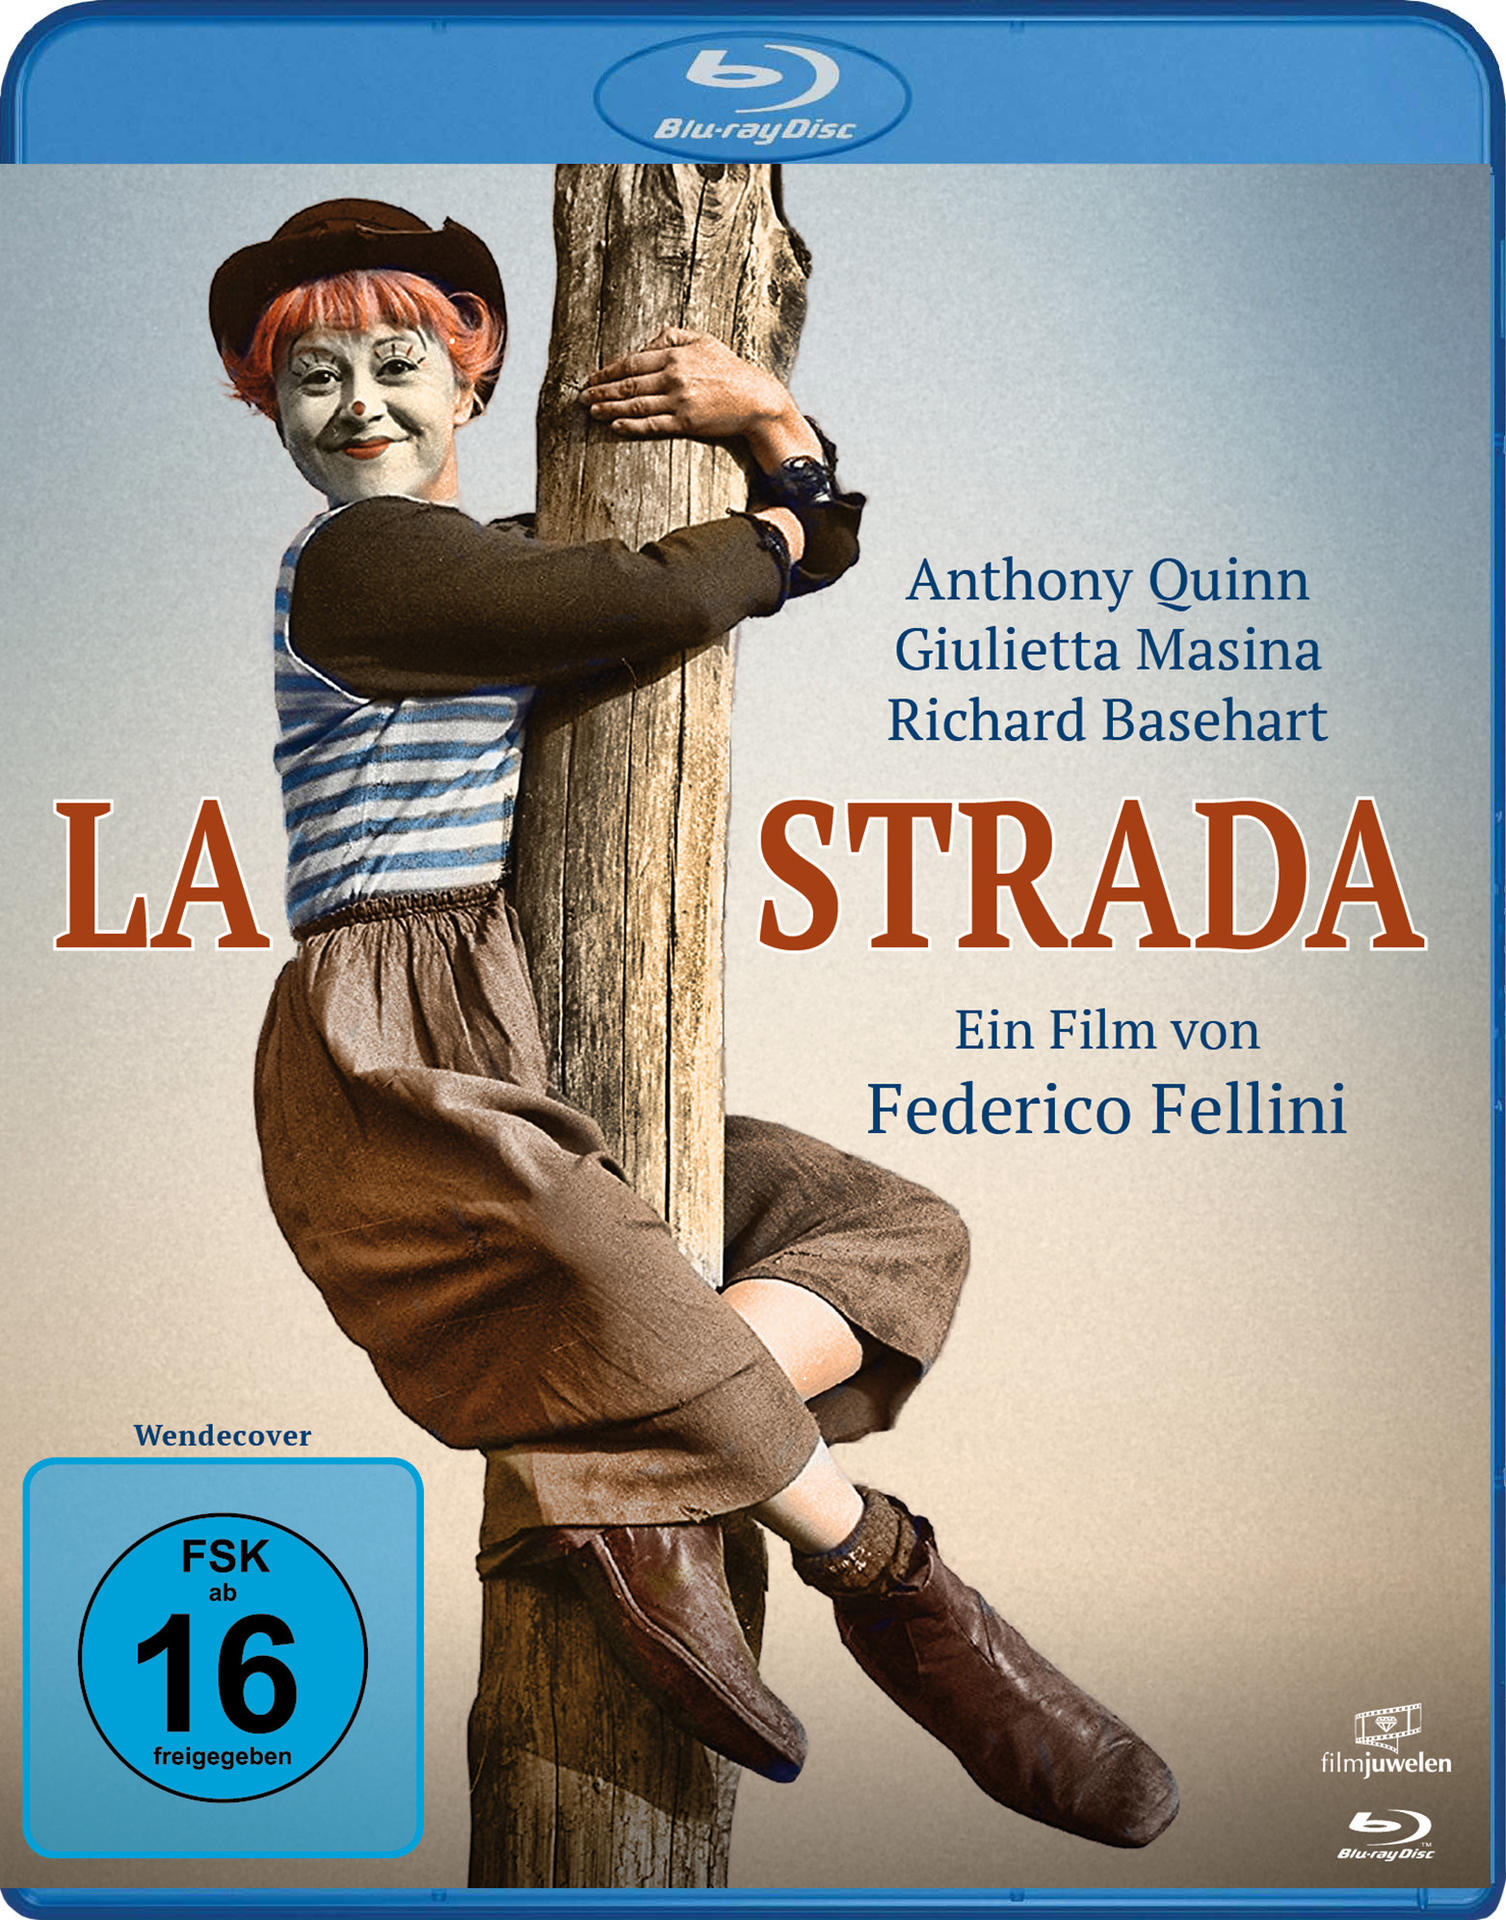 LA STRADA-DAS Blu-ray LIED DER STRASSE